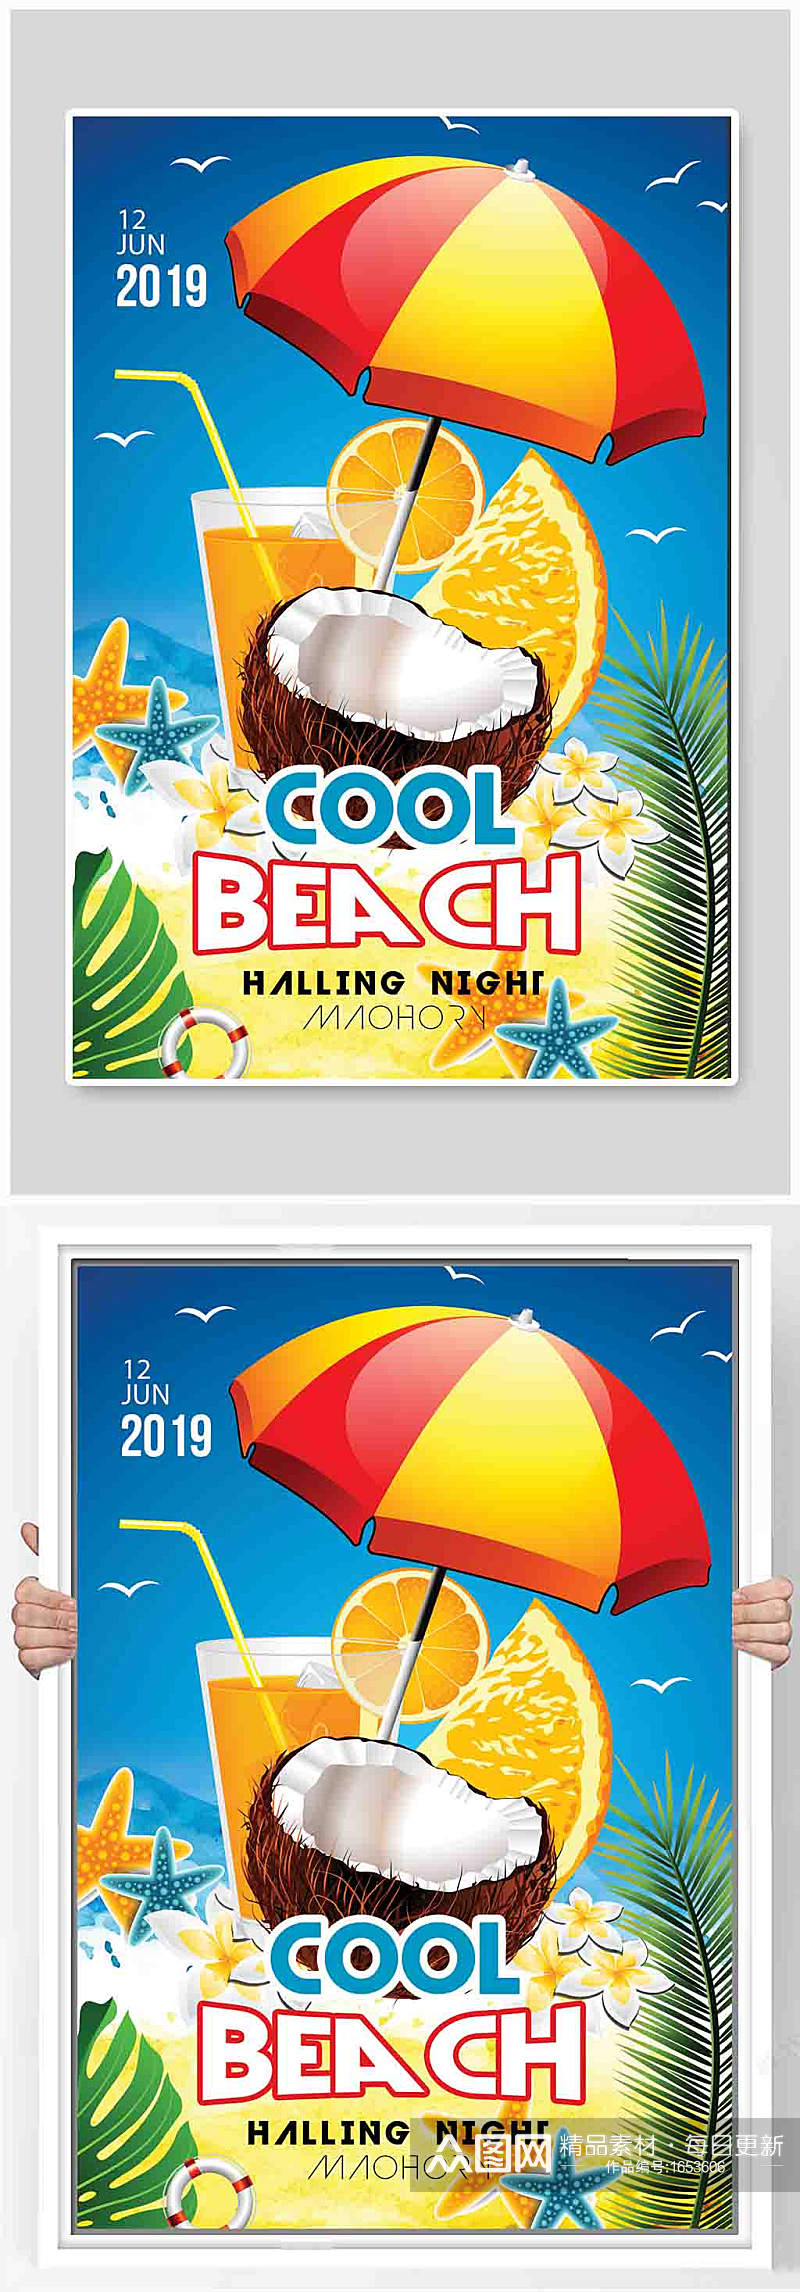 夏日蓝天阳光海滩派对海报素材